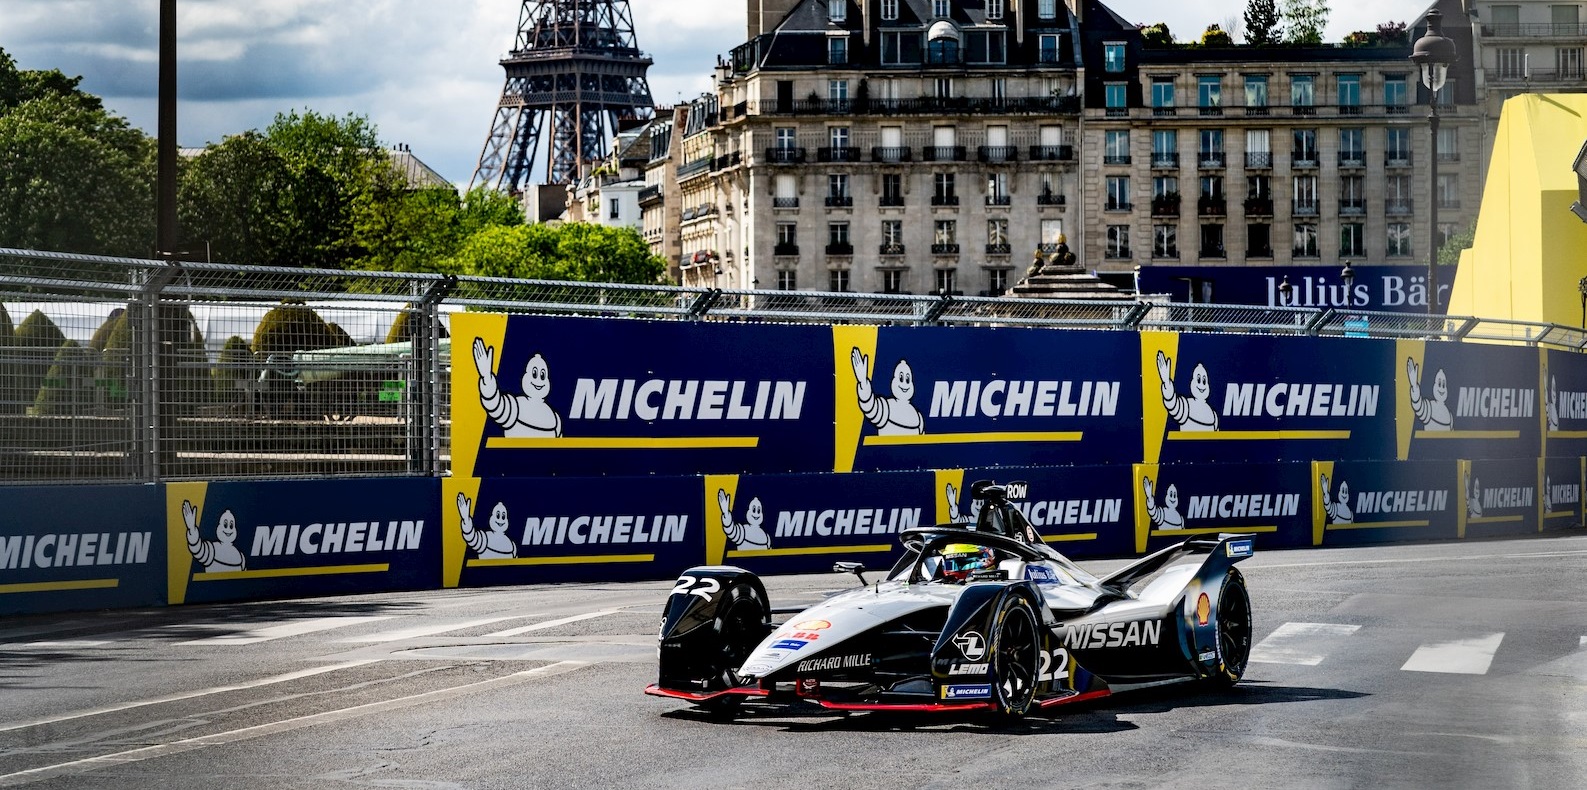 Después de ocho años de innovación, Michelin revive los grandes resultados de la Fórmula E